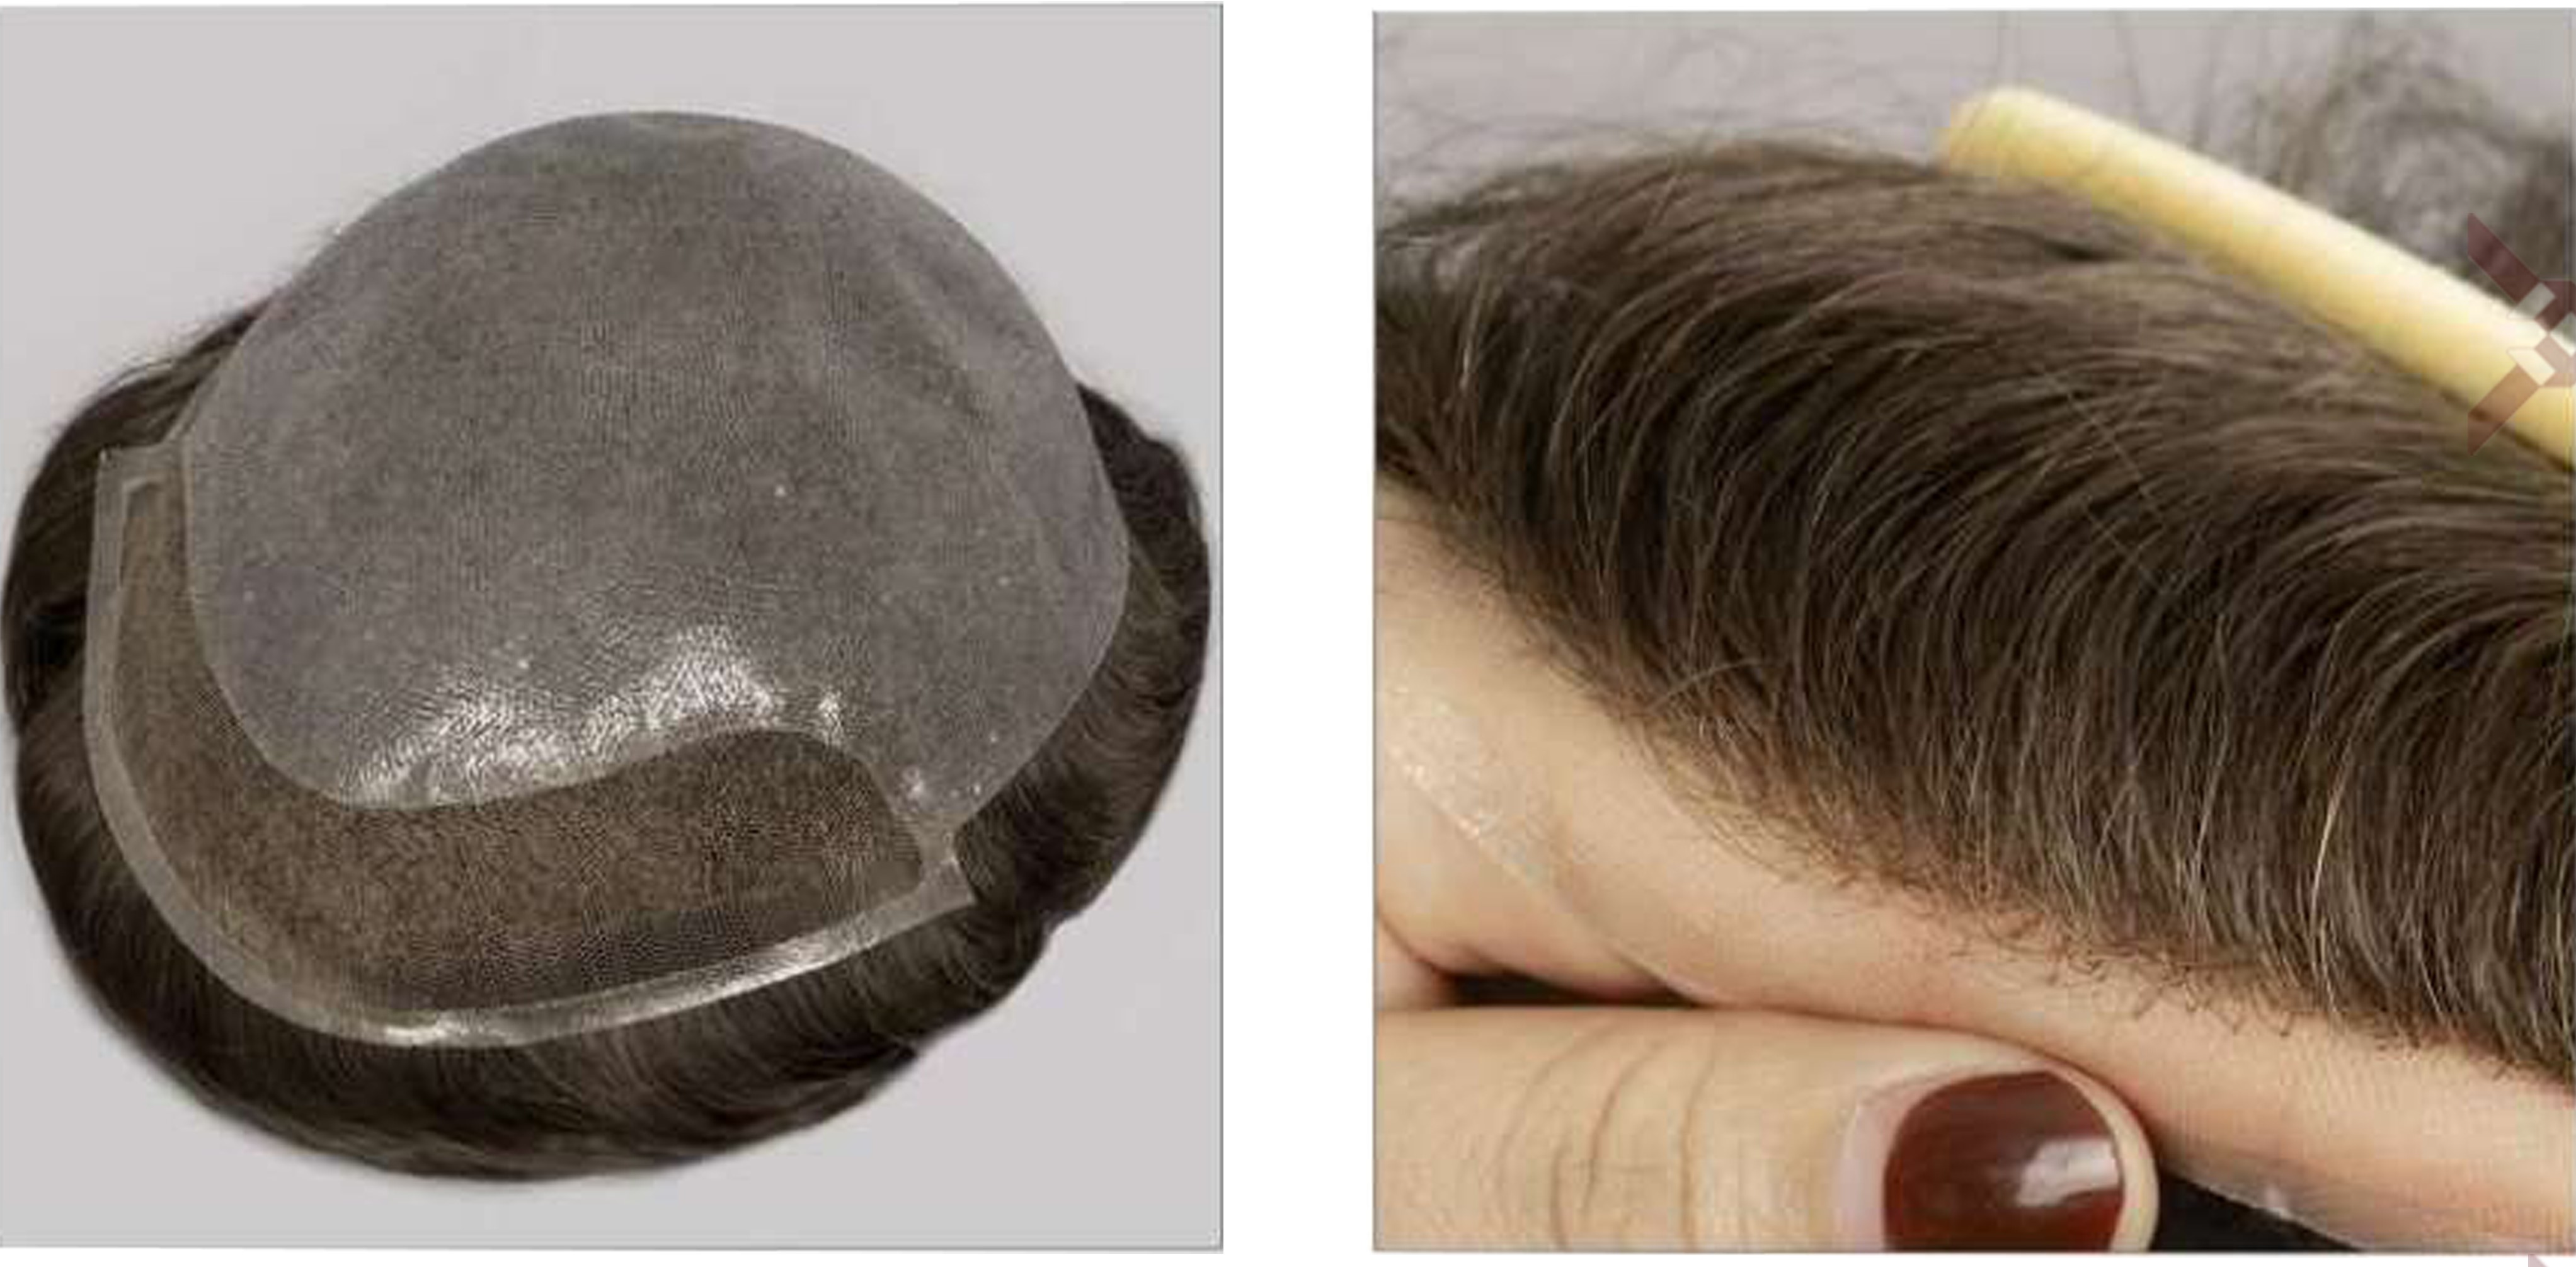 کلاه گیس طبیعی مردانه پروتز مو کف سر تمام سیلیکون جلو تور (کد:8058)